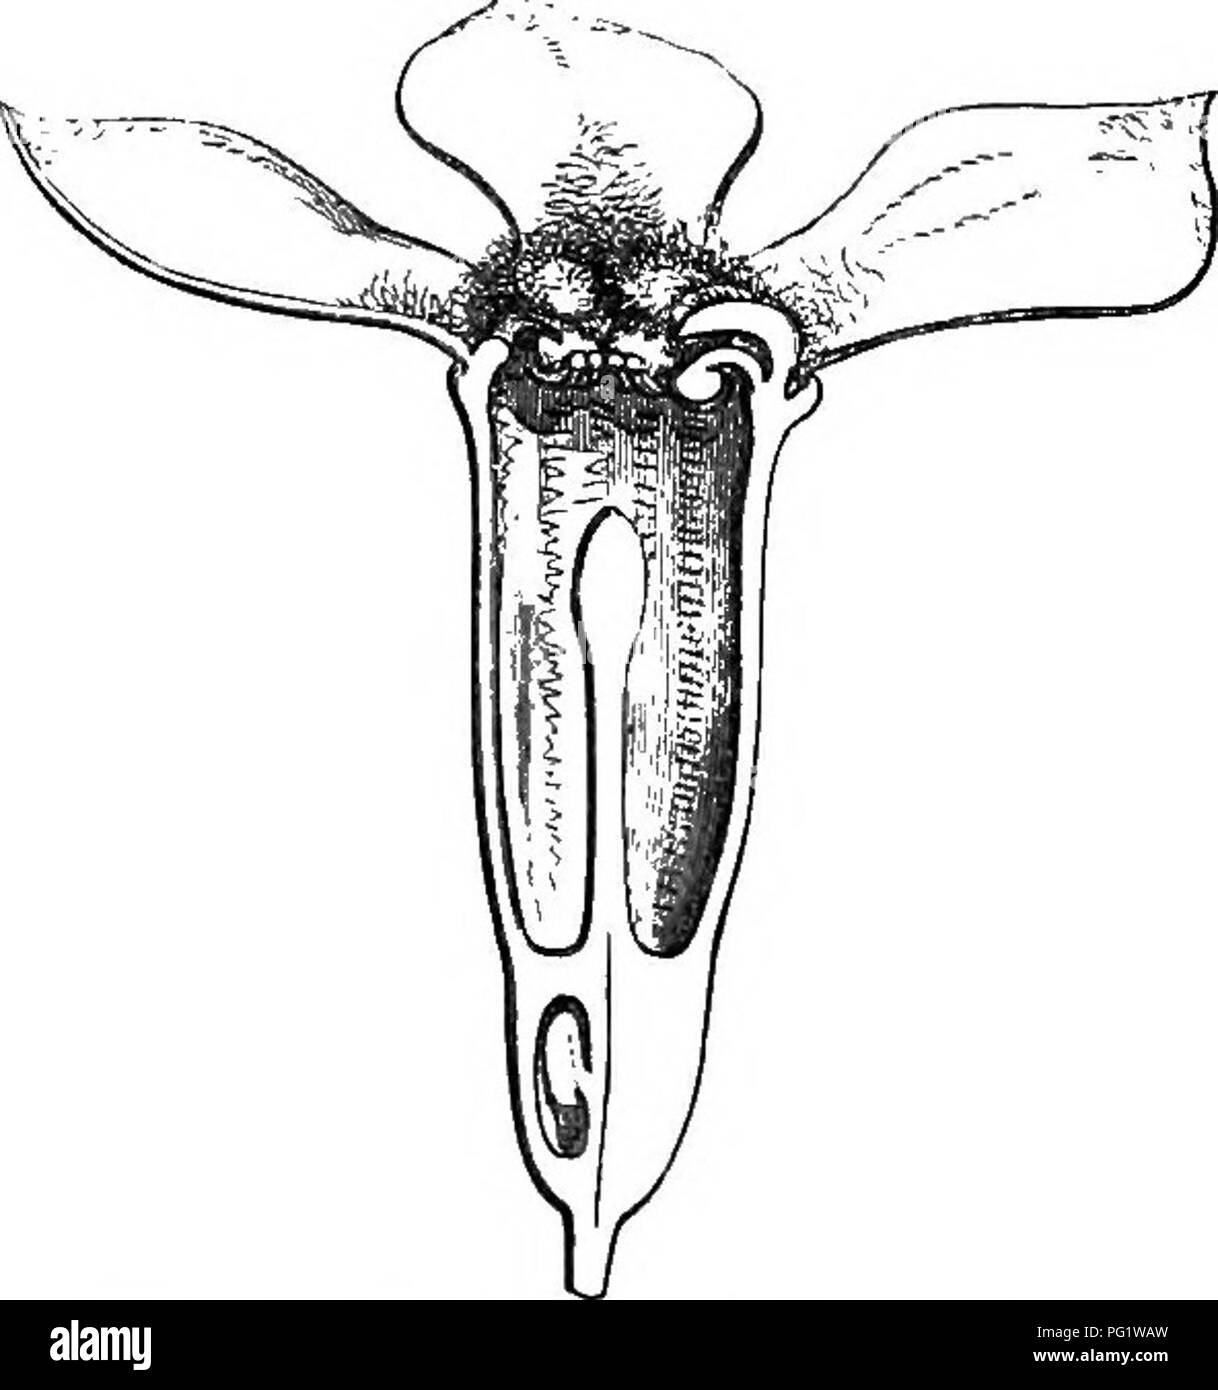 . L'histoire naturelle des plantes. La botanique. Fig. 425. Flower (}). qui l'ovaire est abouté, et à l'orifice supérieur de qui sont insérées quatre ou cinq sépales colorés, comme de nombreux petits pétales de rechange, super- posés à qui sont un nombre égal d'étamines, anthères courtes bilocularintrorse avec â, surmontée d'un conjonctif glandulaire. Les cellules de l'ovaire infère, 3-5 en nombre, contiennent chacun 2 ou 3 ovules croissant avec micropyle extérieur et inférieur. Decaisnb (trad. a. Gen. Botan. 292) a décrit et figuré les ovules comme pendentif, une grave erreur. Le fruit est drupacé, le putamen et délimite un Banque D'Images